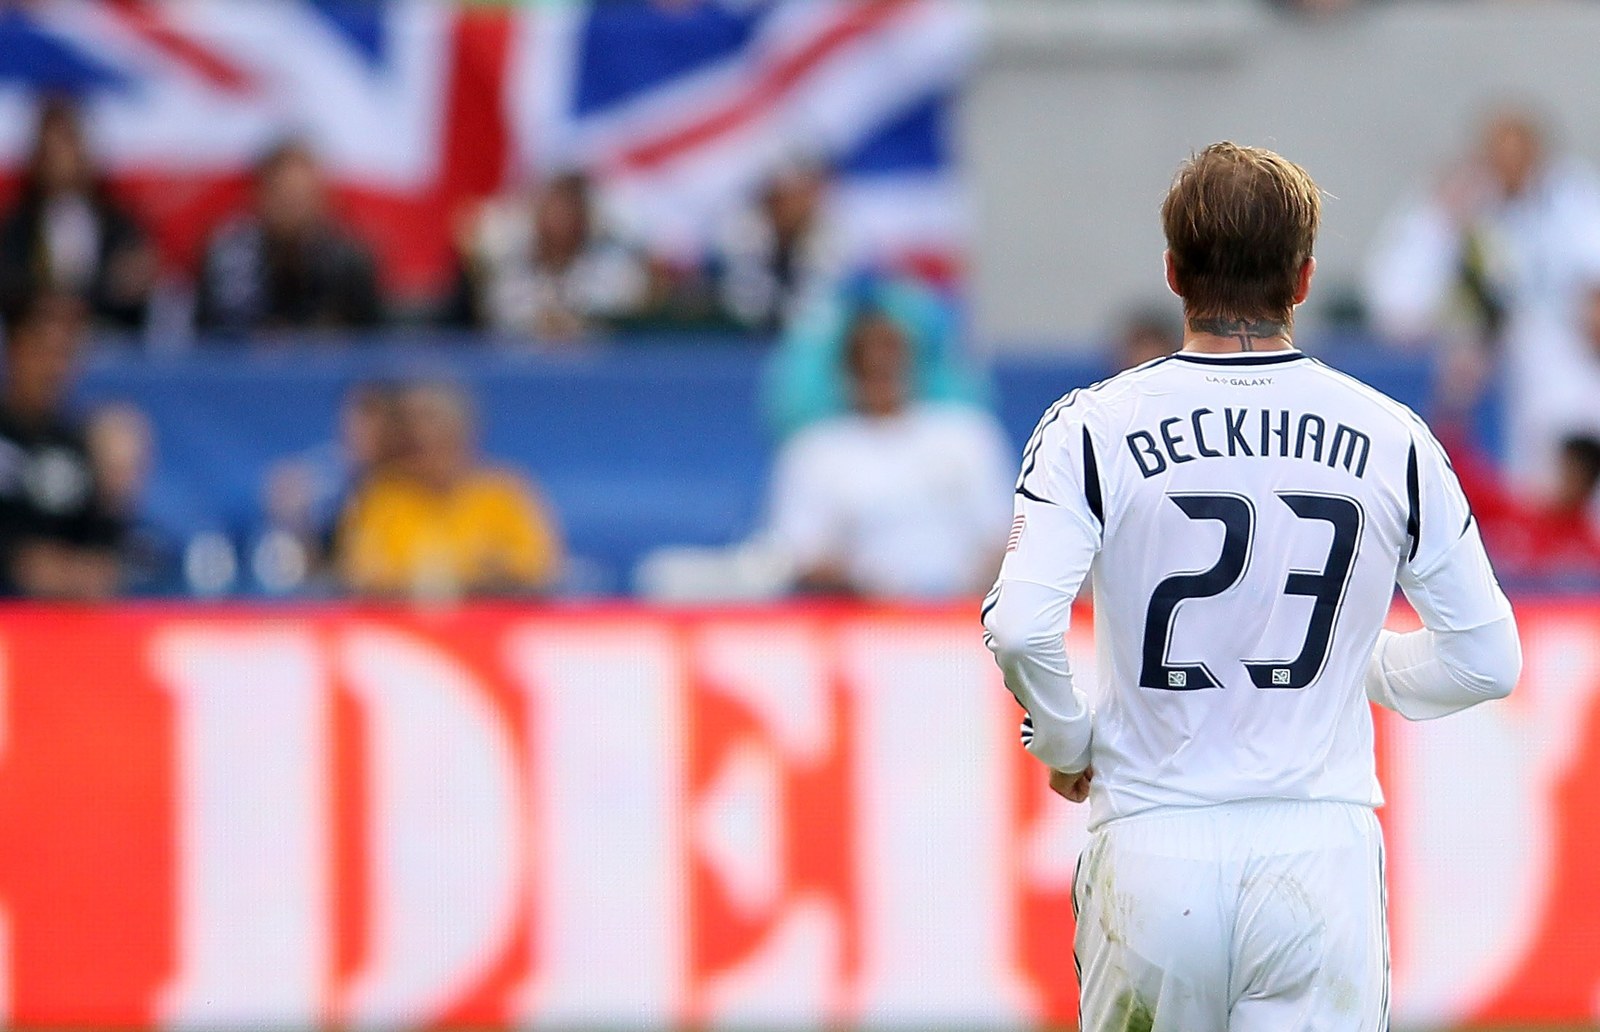 Первый номер в футболе. Дэвид Бекхэм 23 номер. Футболист Beckham 23 номер. Бекхэм Дэвид номер в футболе. David Beckham 23.